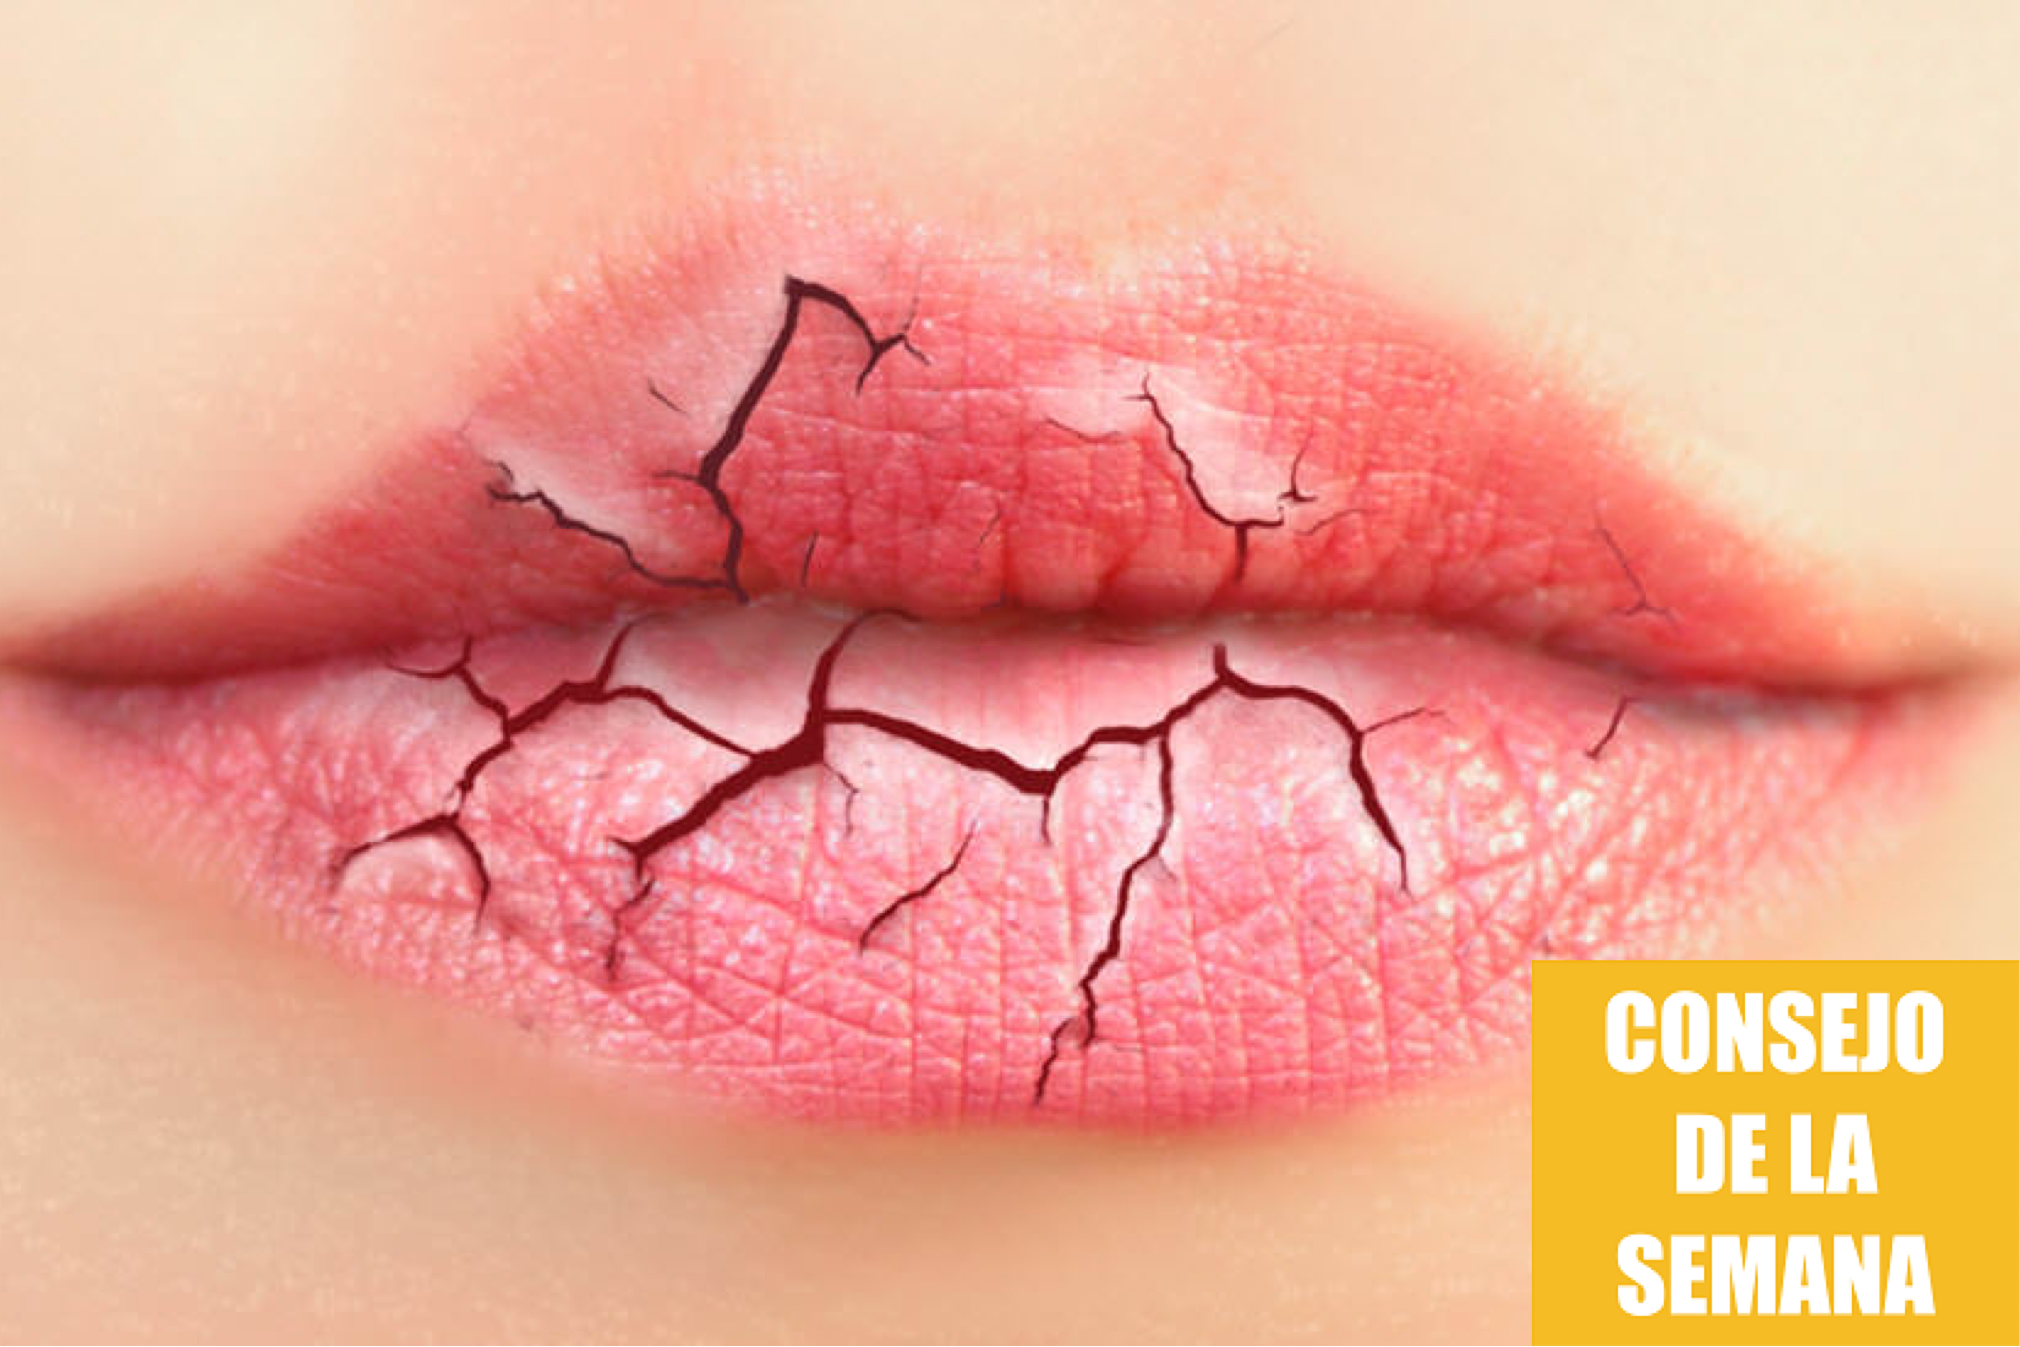 Consejos para evitar labios secos y partidos en invierno